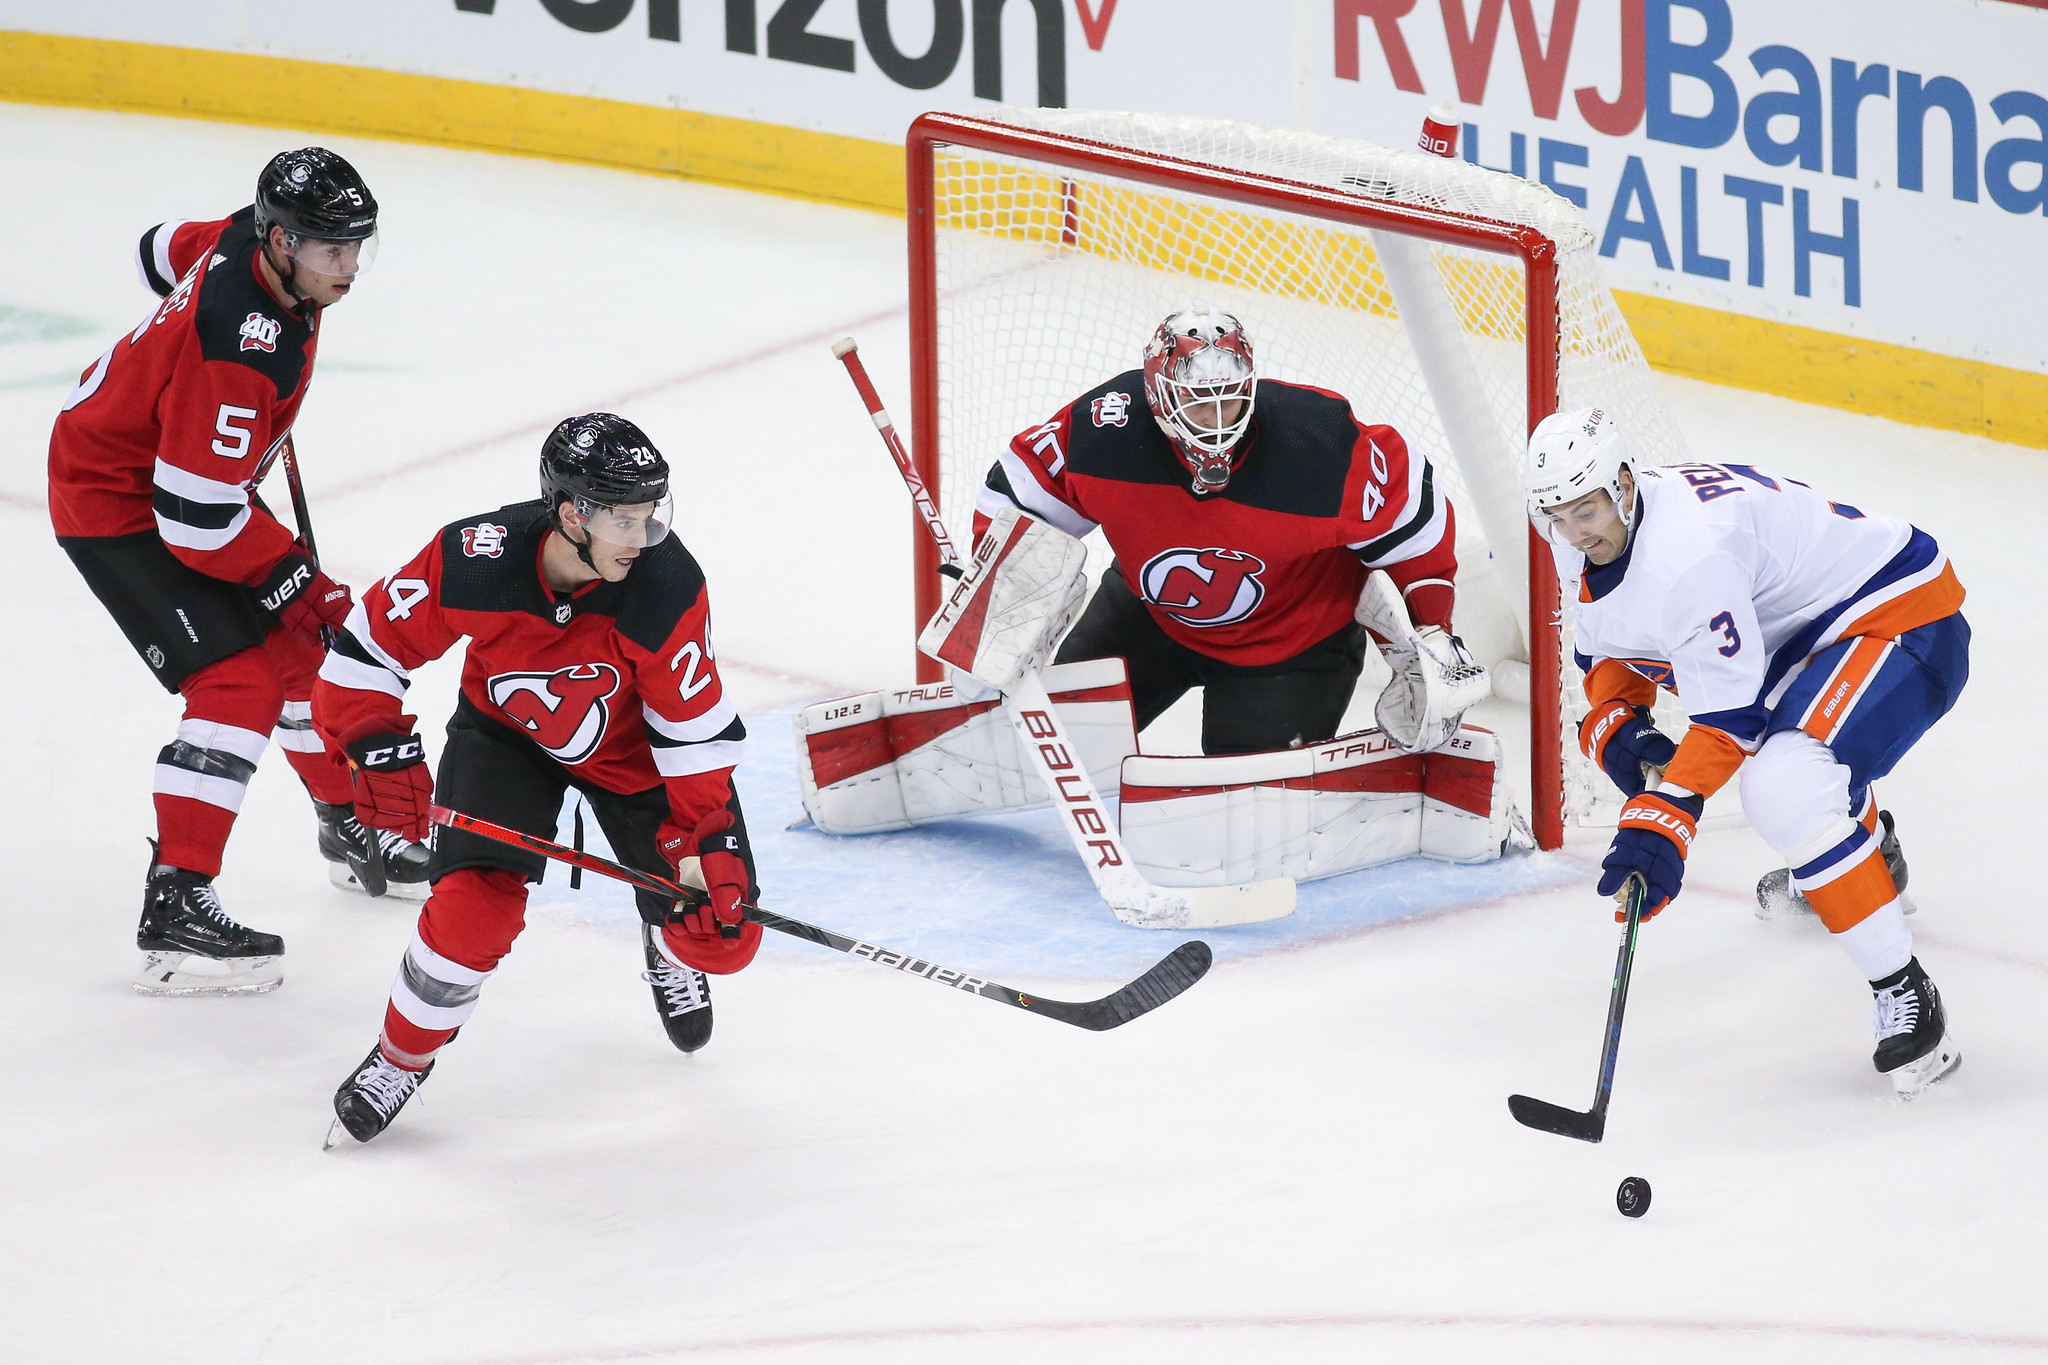 4 Takeaways From New Jersey Devils' 4-3 Shootout Win vs. Sharks